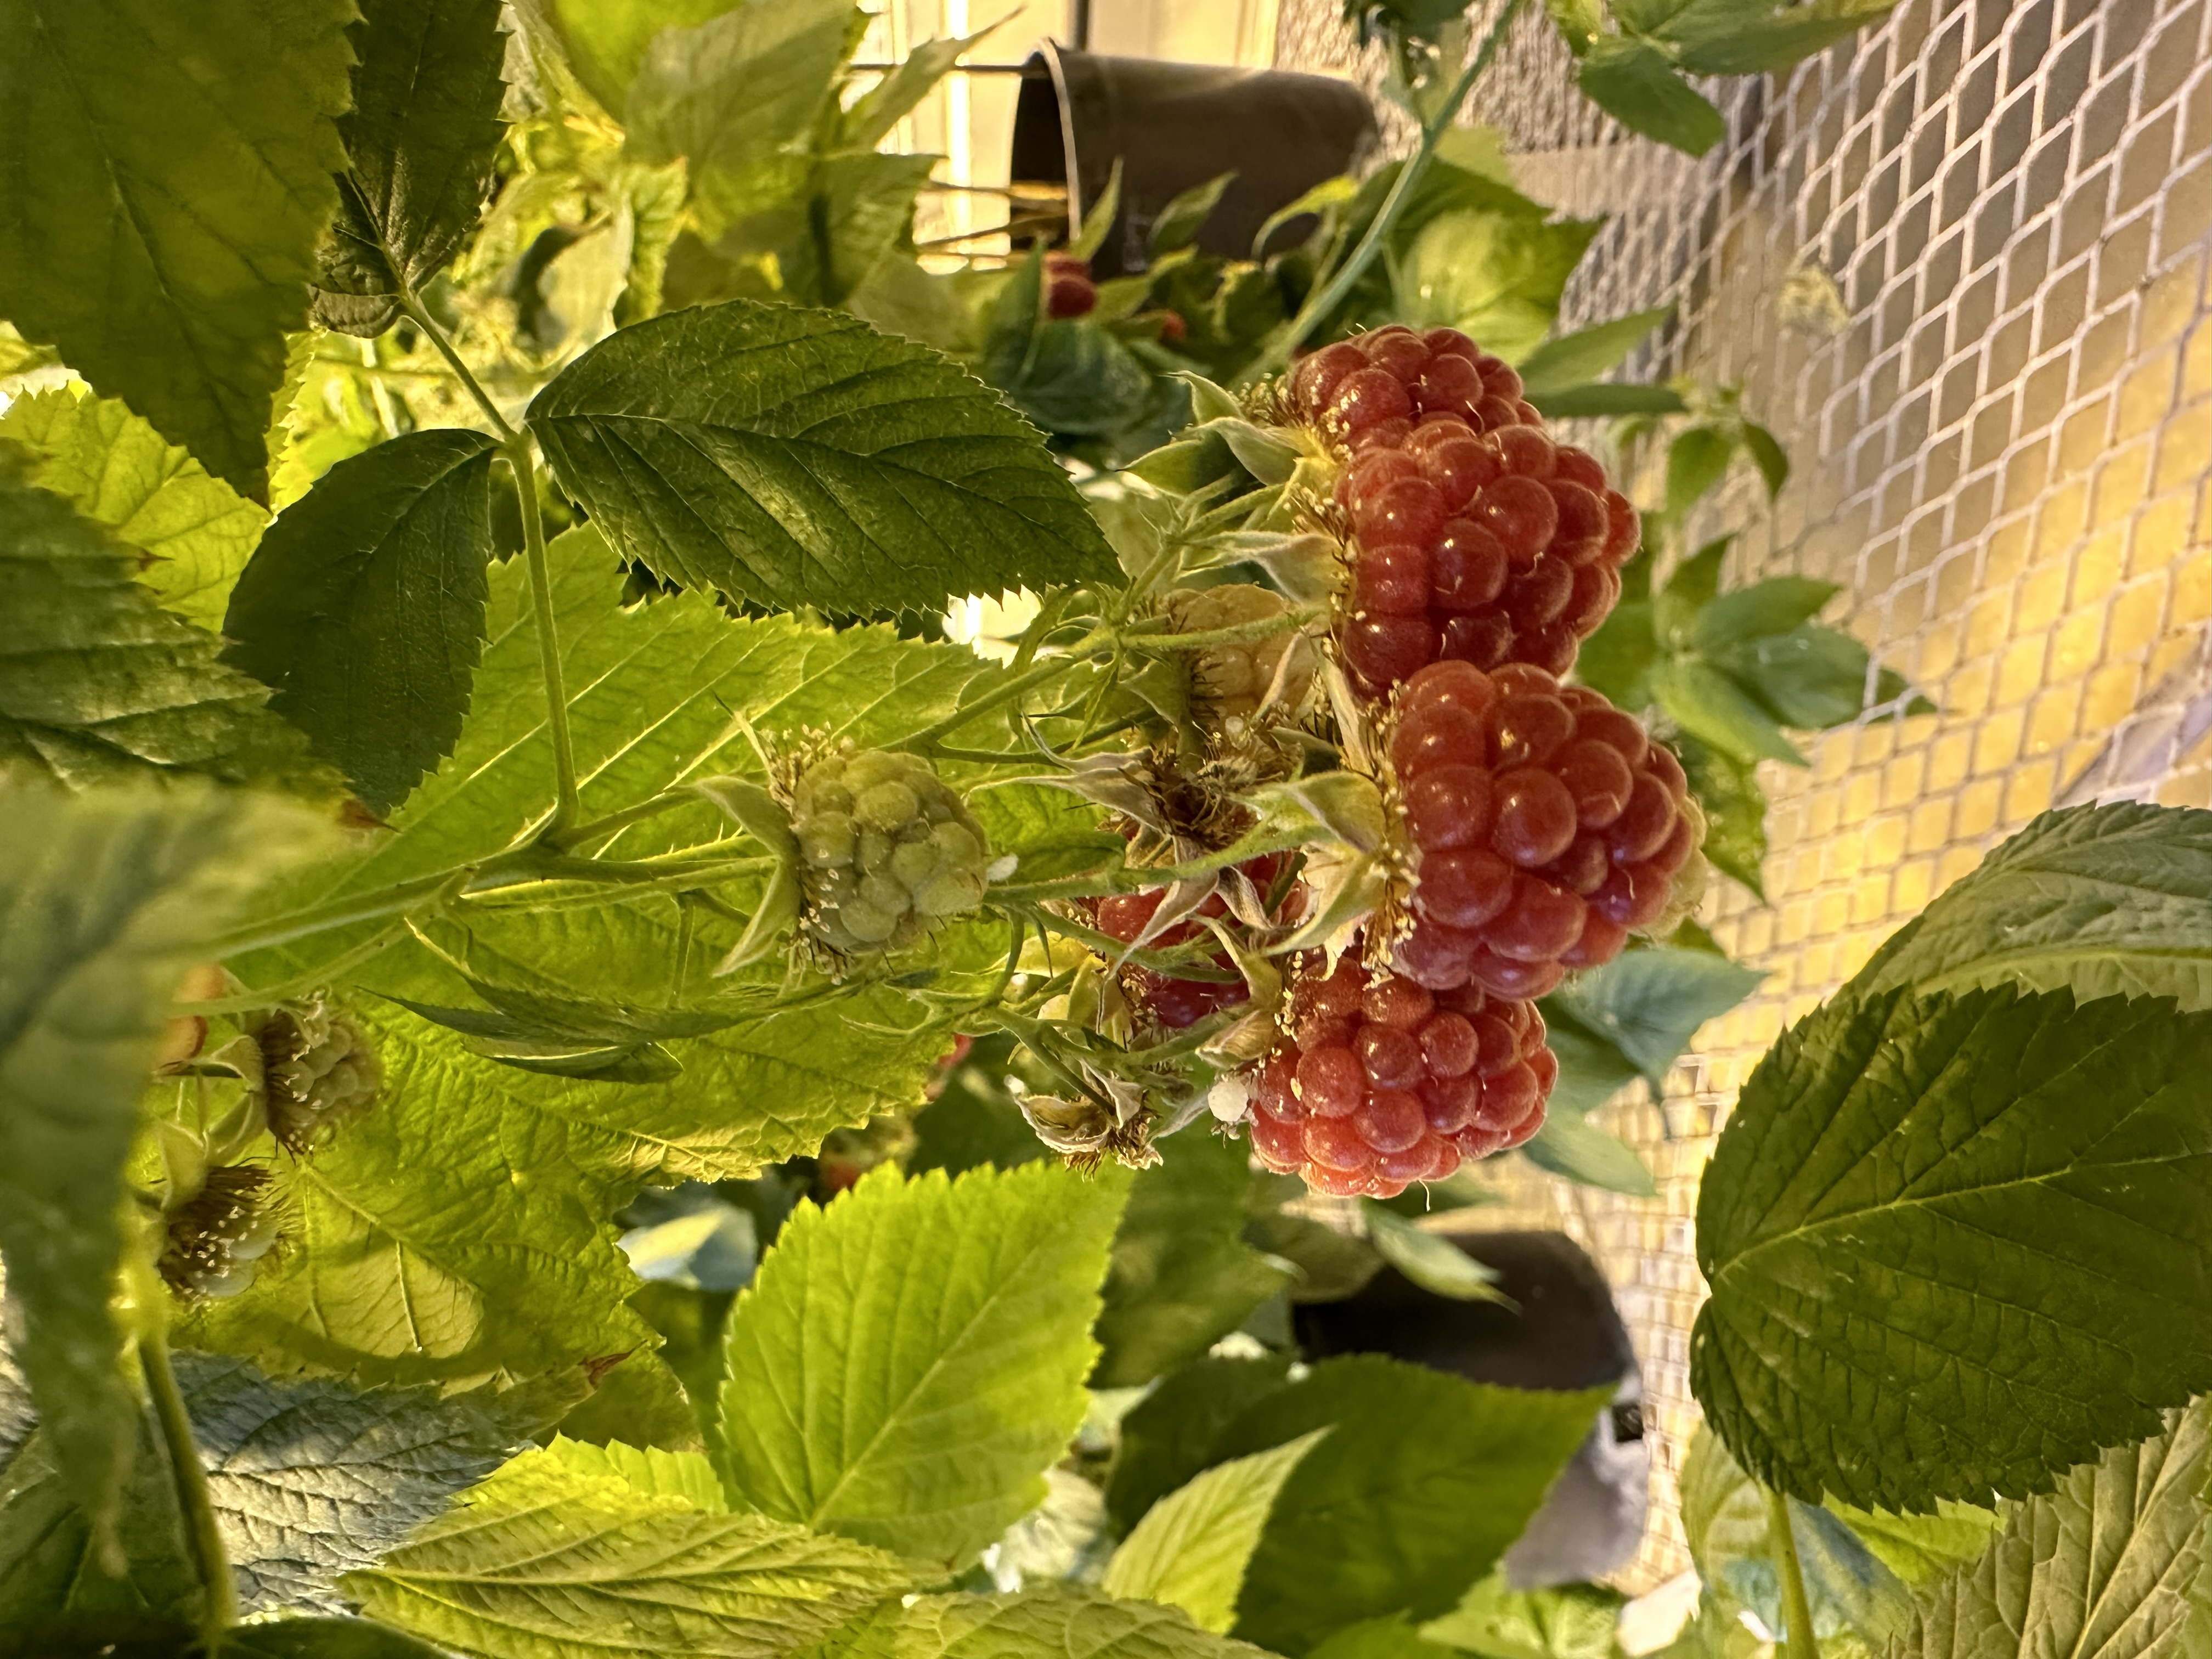 Raspberries growing in the greenhouse